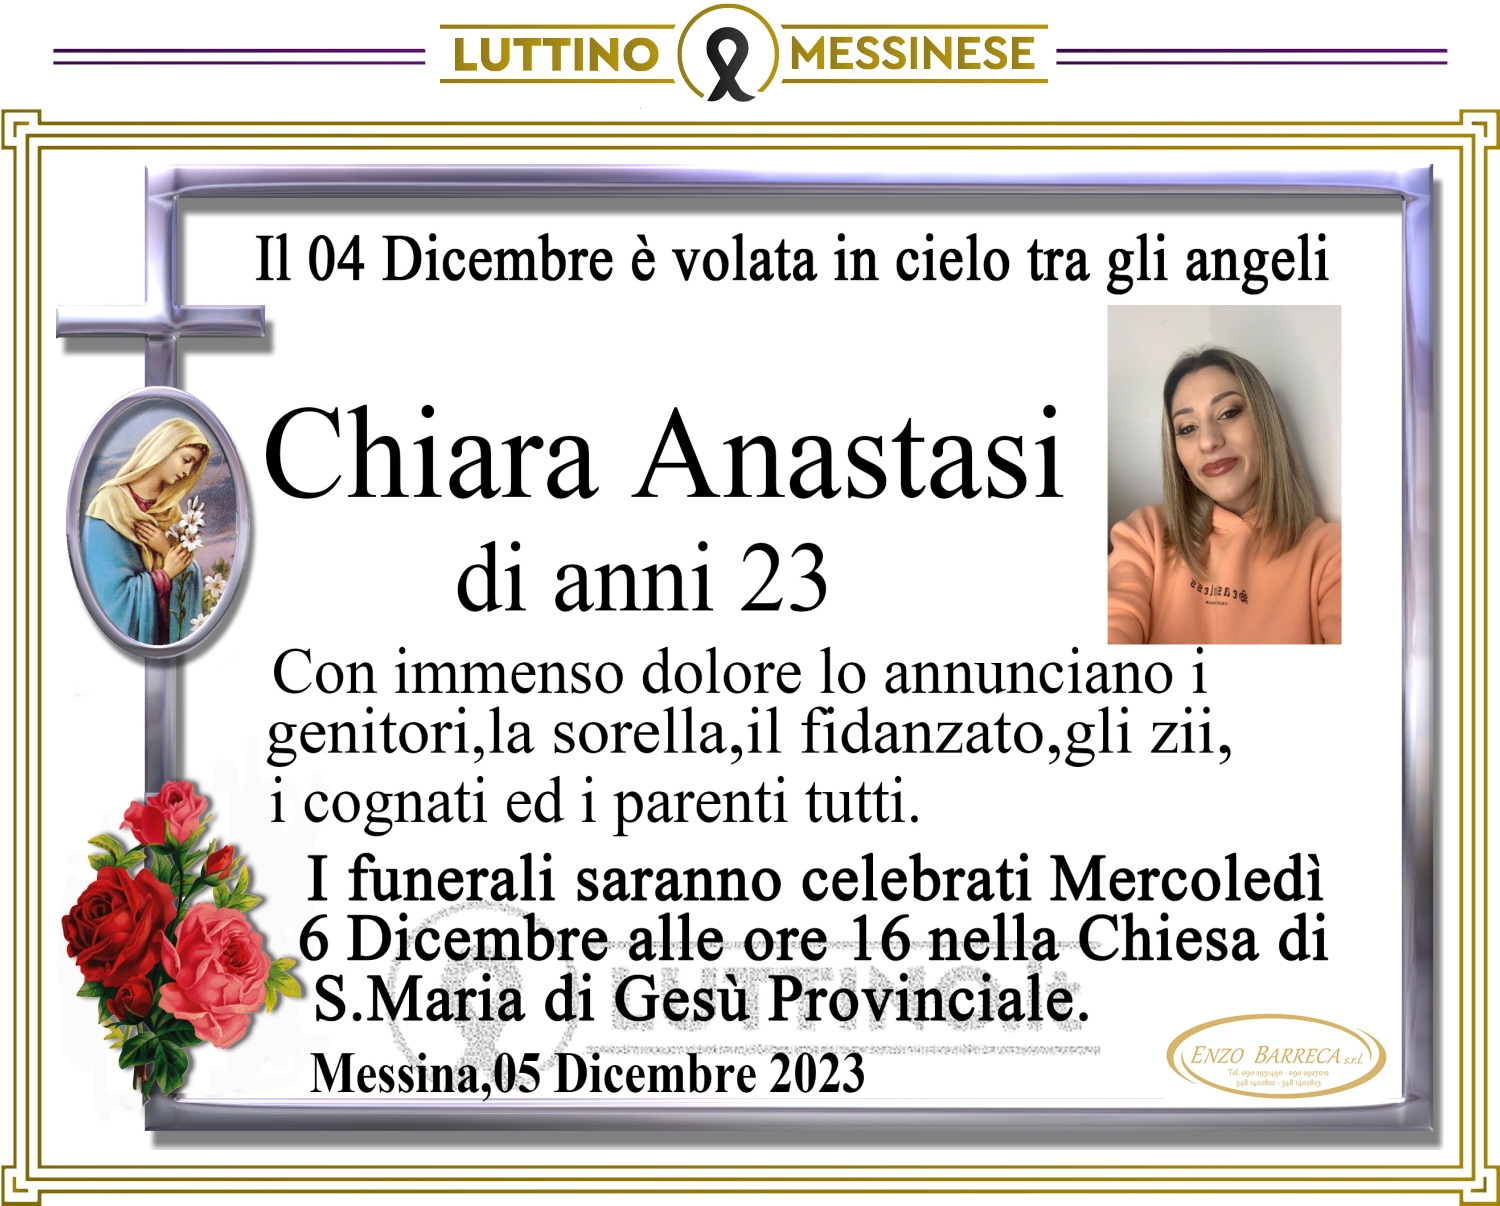 Chiara Anastasi